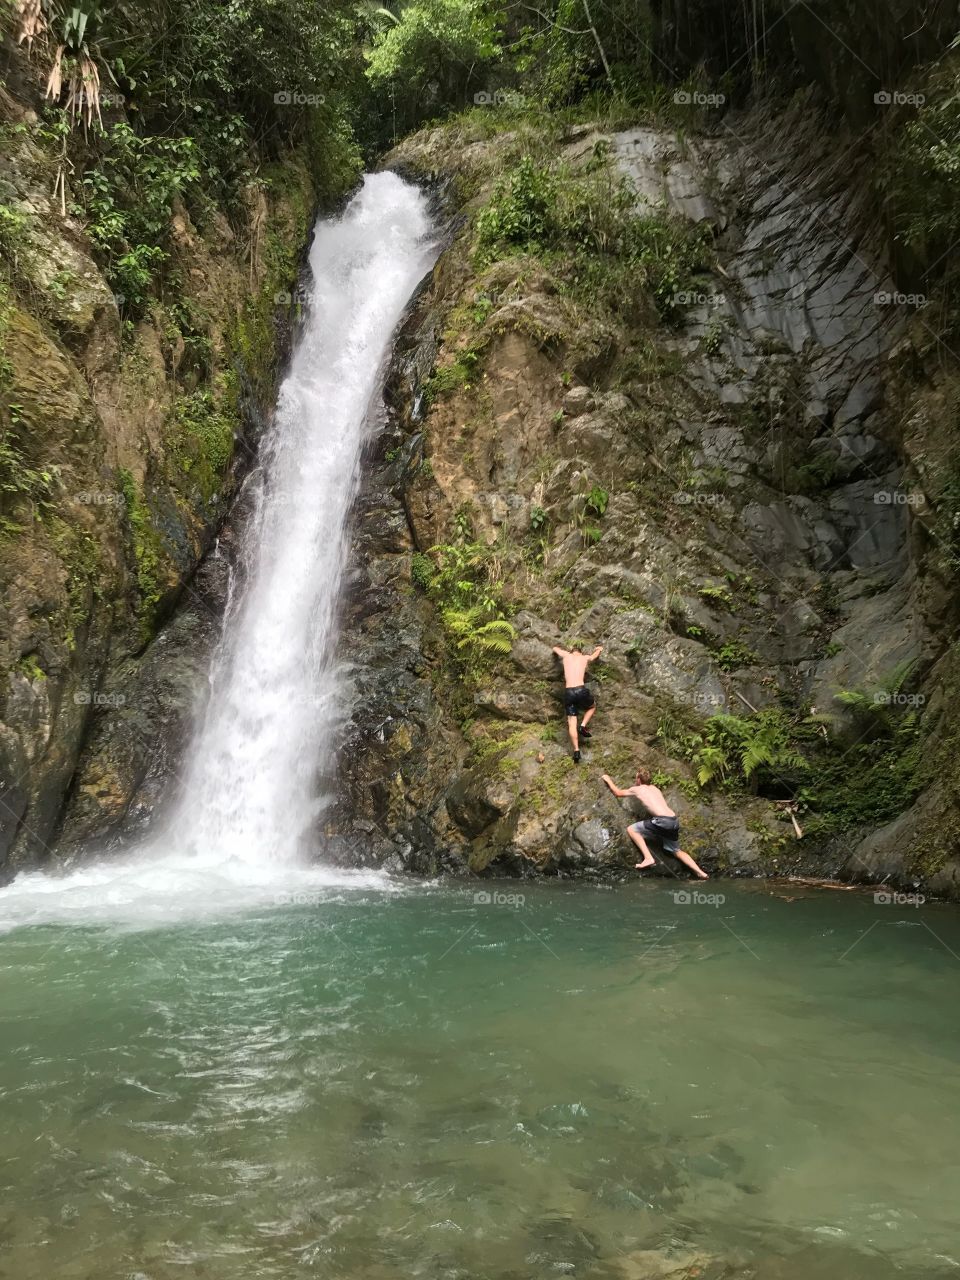 Waterfall jump climb